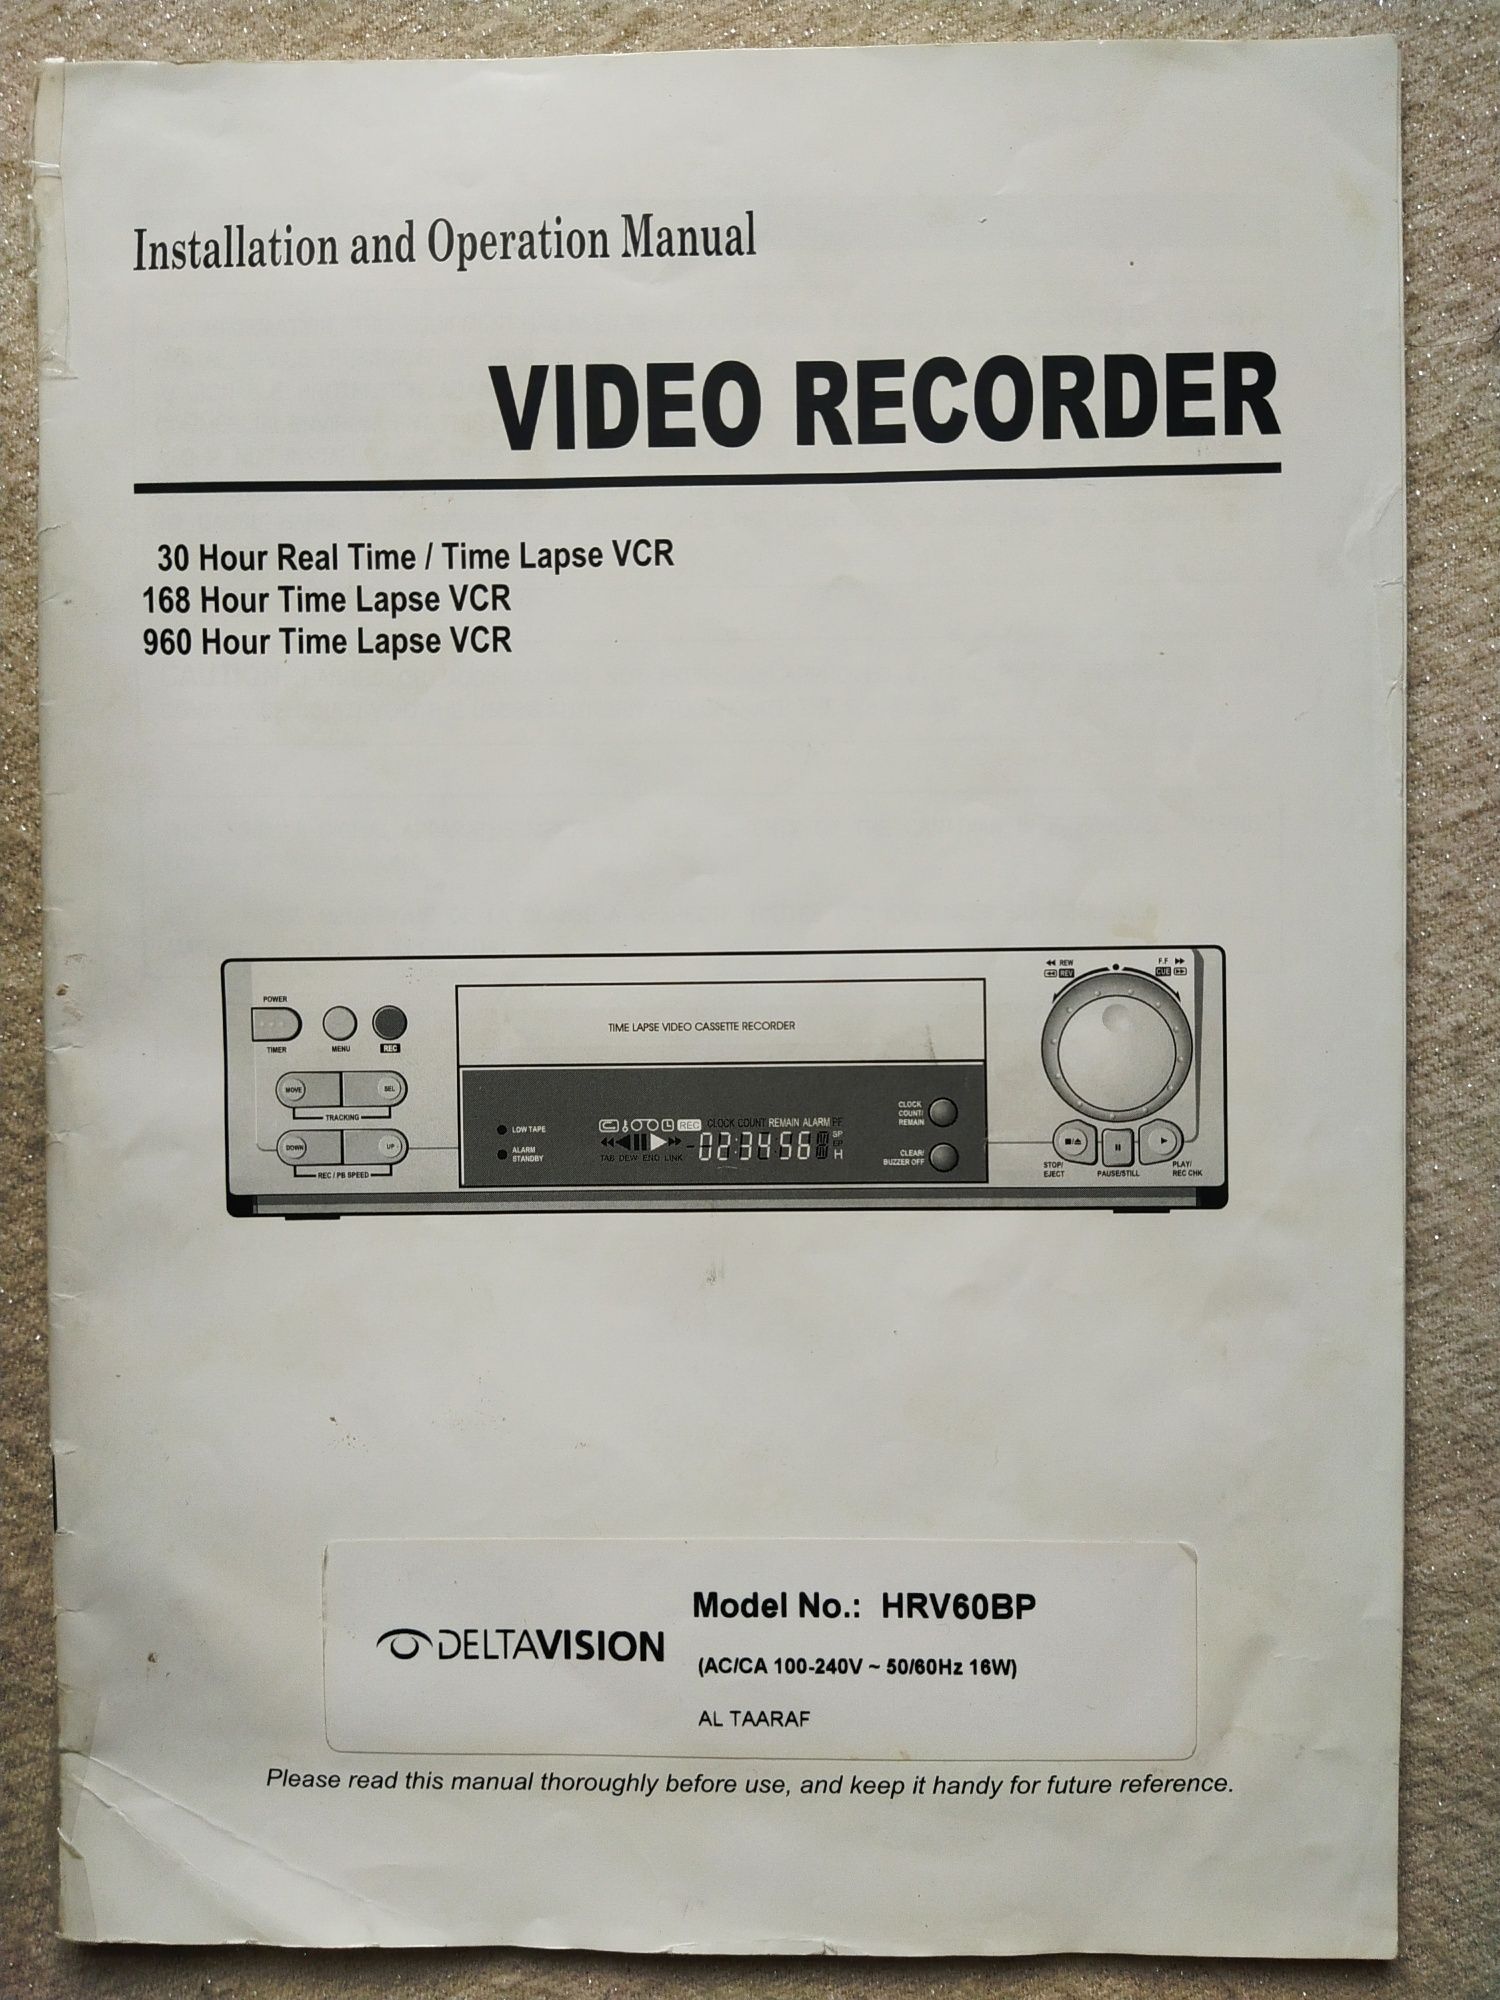 Продается ,, Video Recorder ''